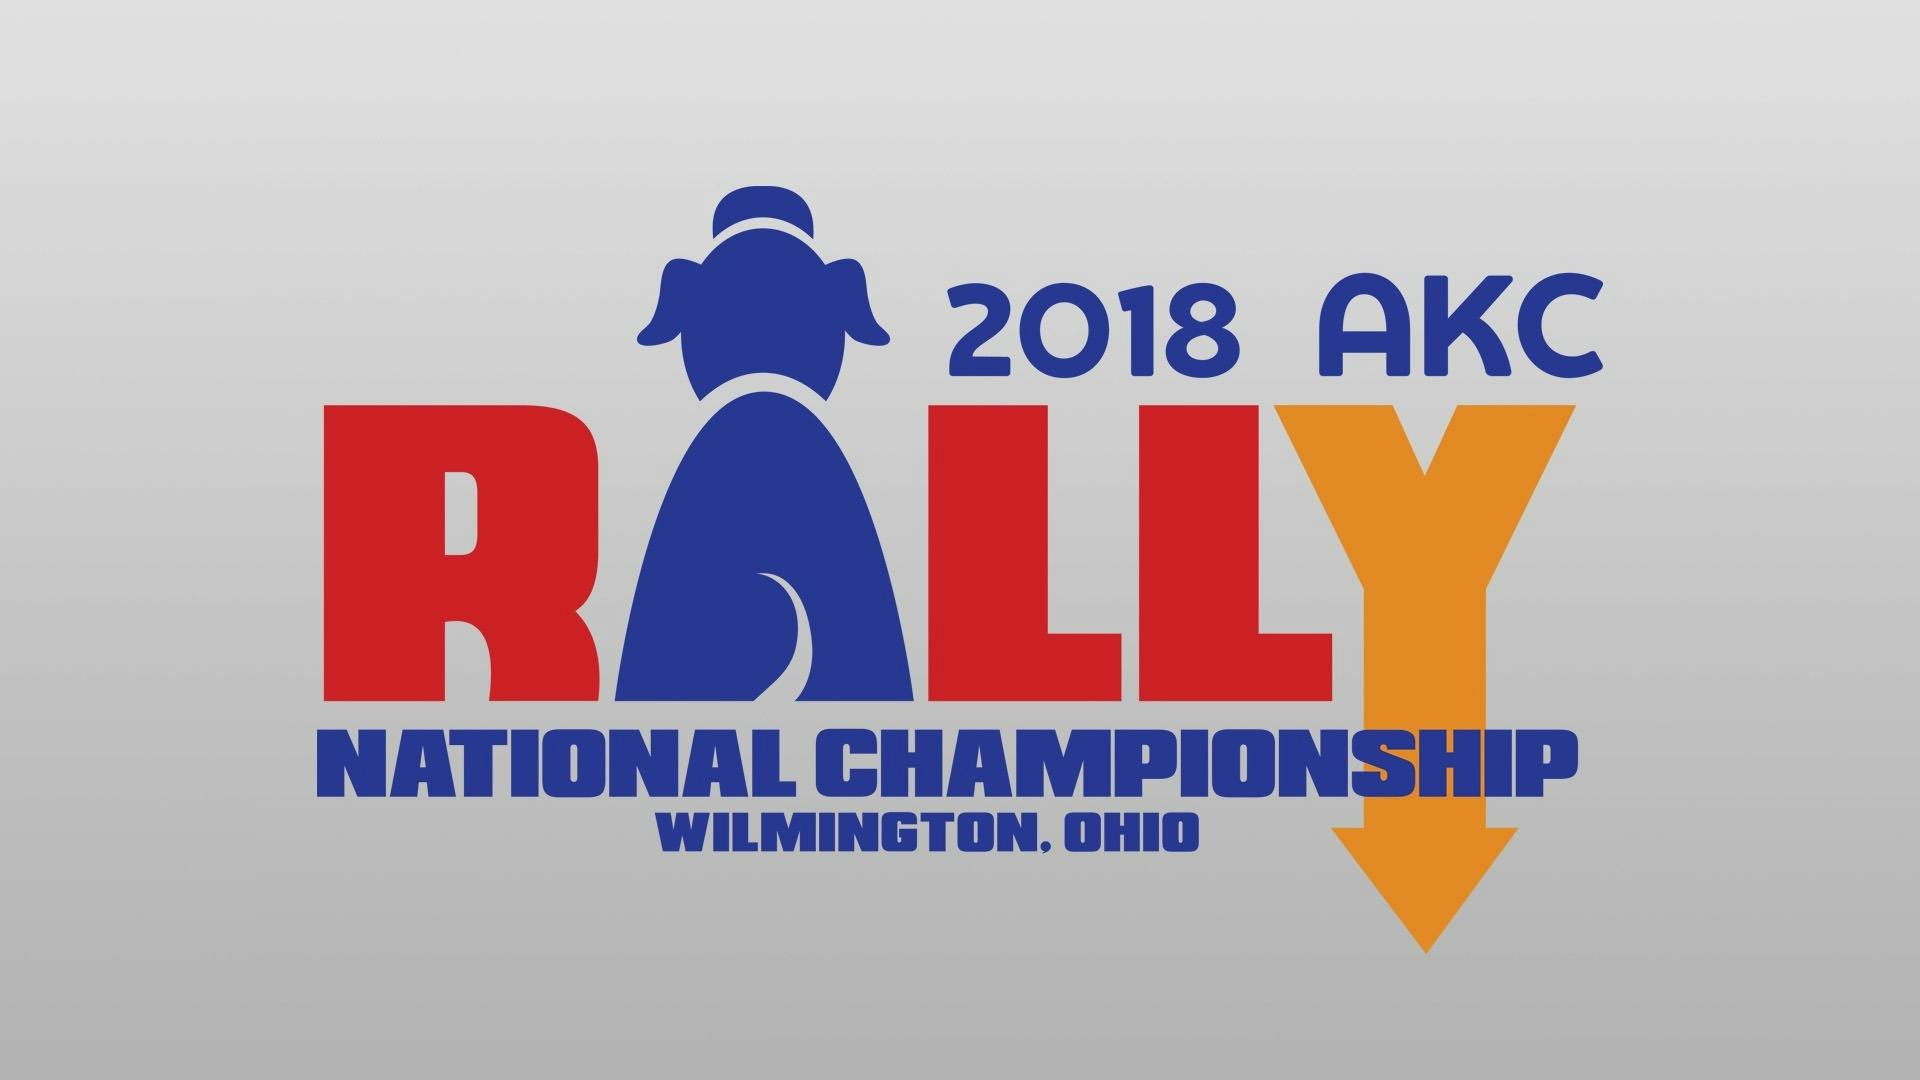 AKC.TV 2018 AKC Rally National Championship